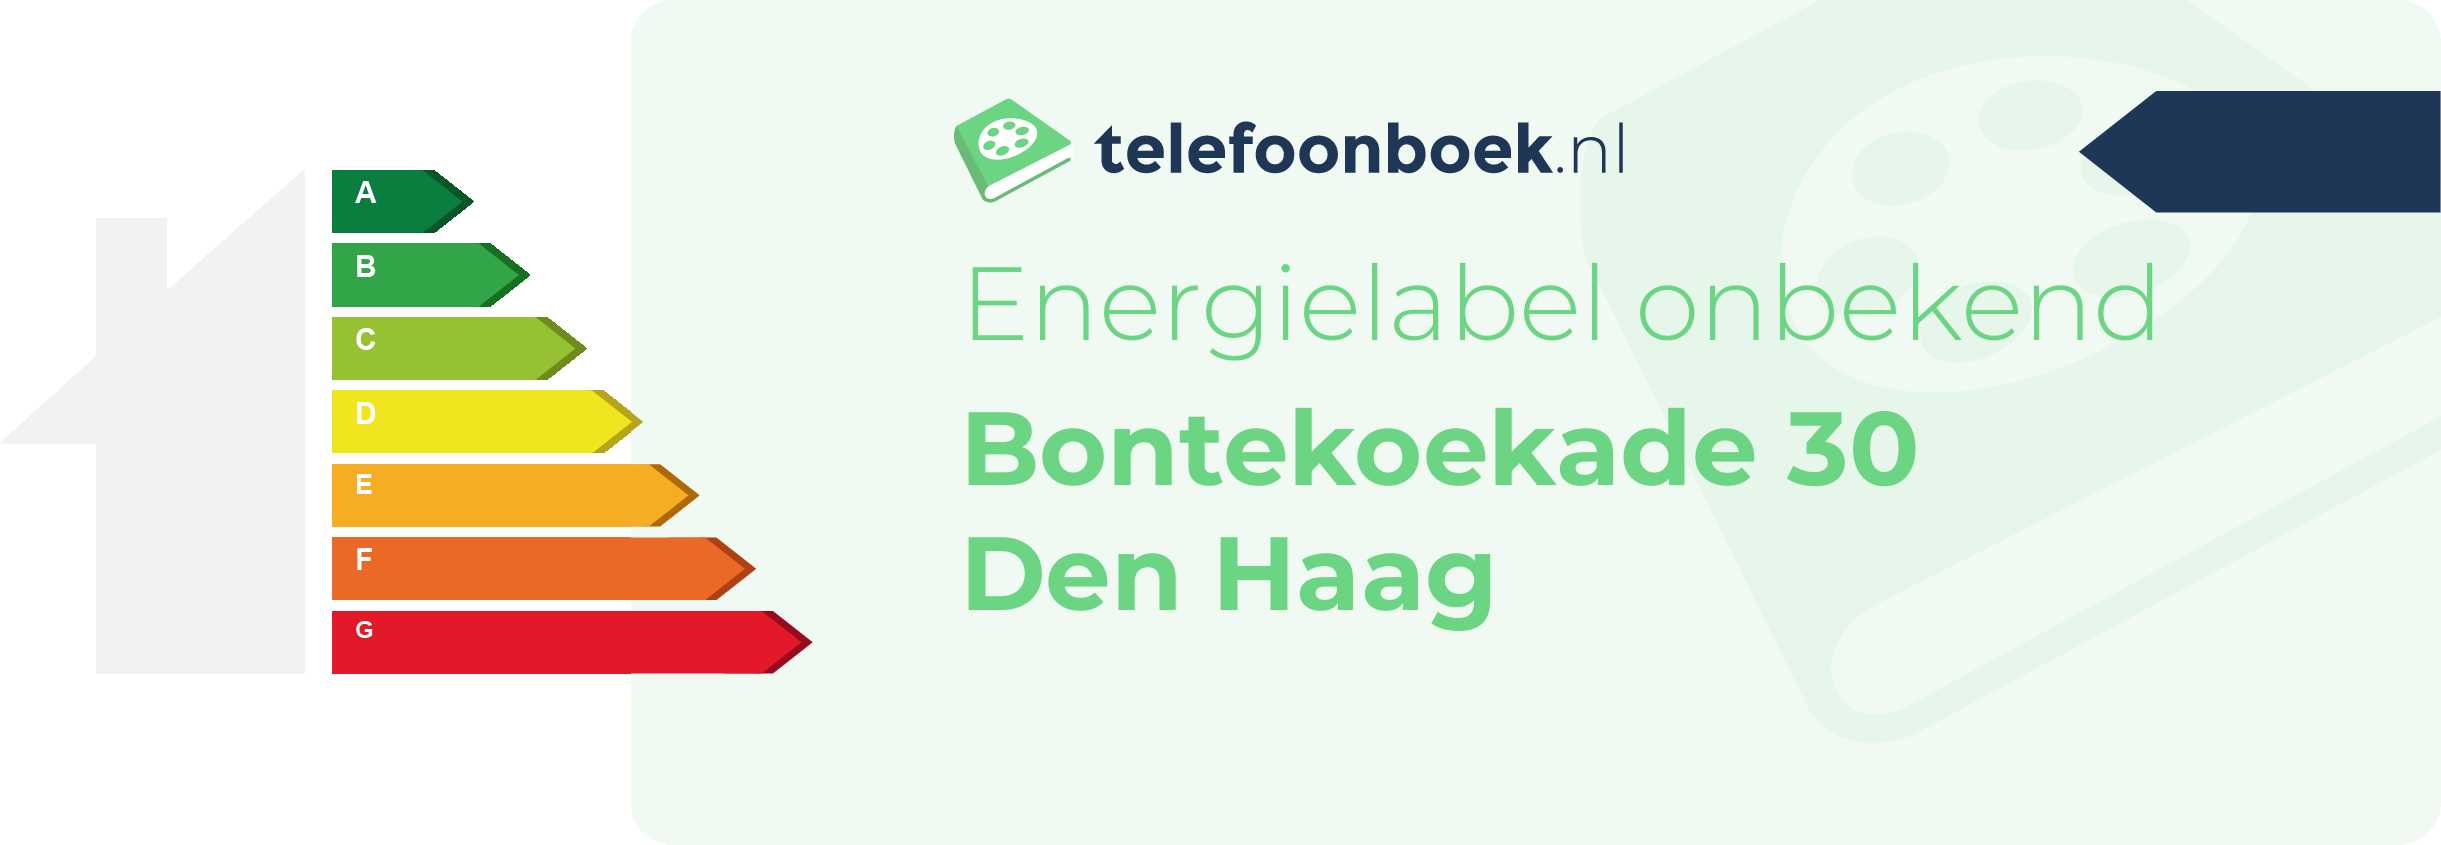 Energielabel Bontekoekade 30 Den Haag